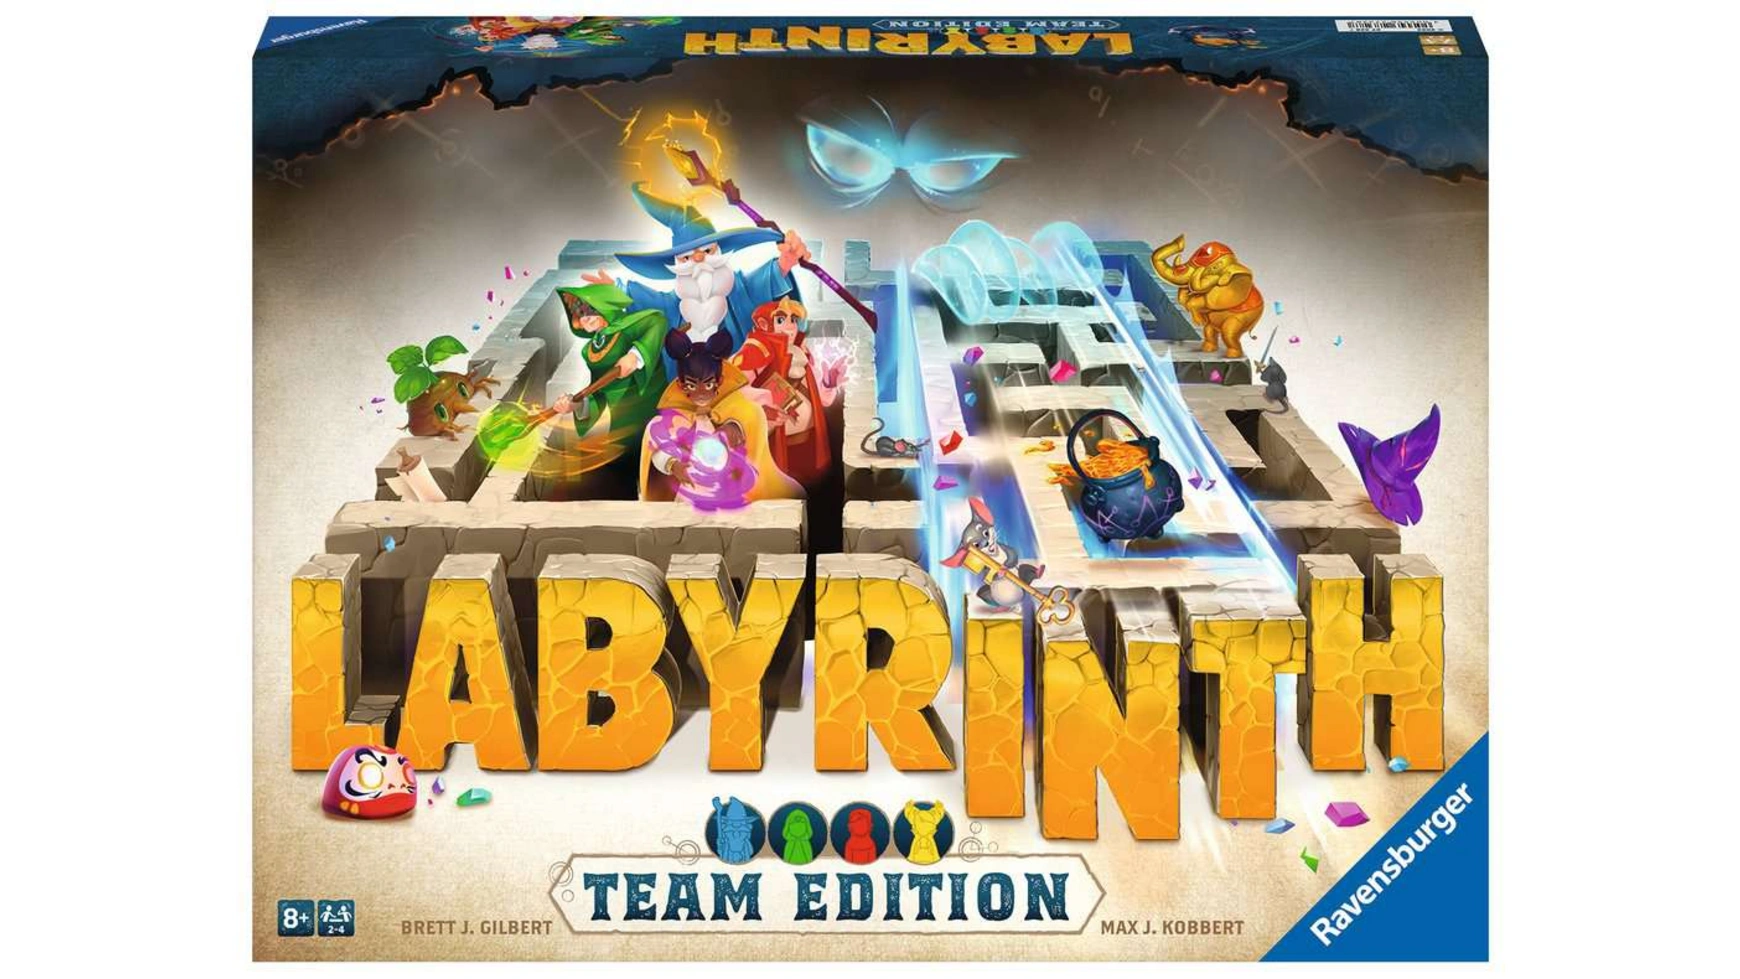 Ravensburger Spiele Labyrinth Team Edition Кооперативная версия классической игры ravensburger spiele paw patrol junior labyrinth известная настольная игра от ravensburger в детской версии